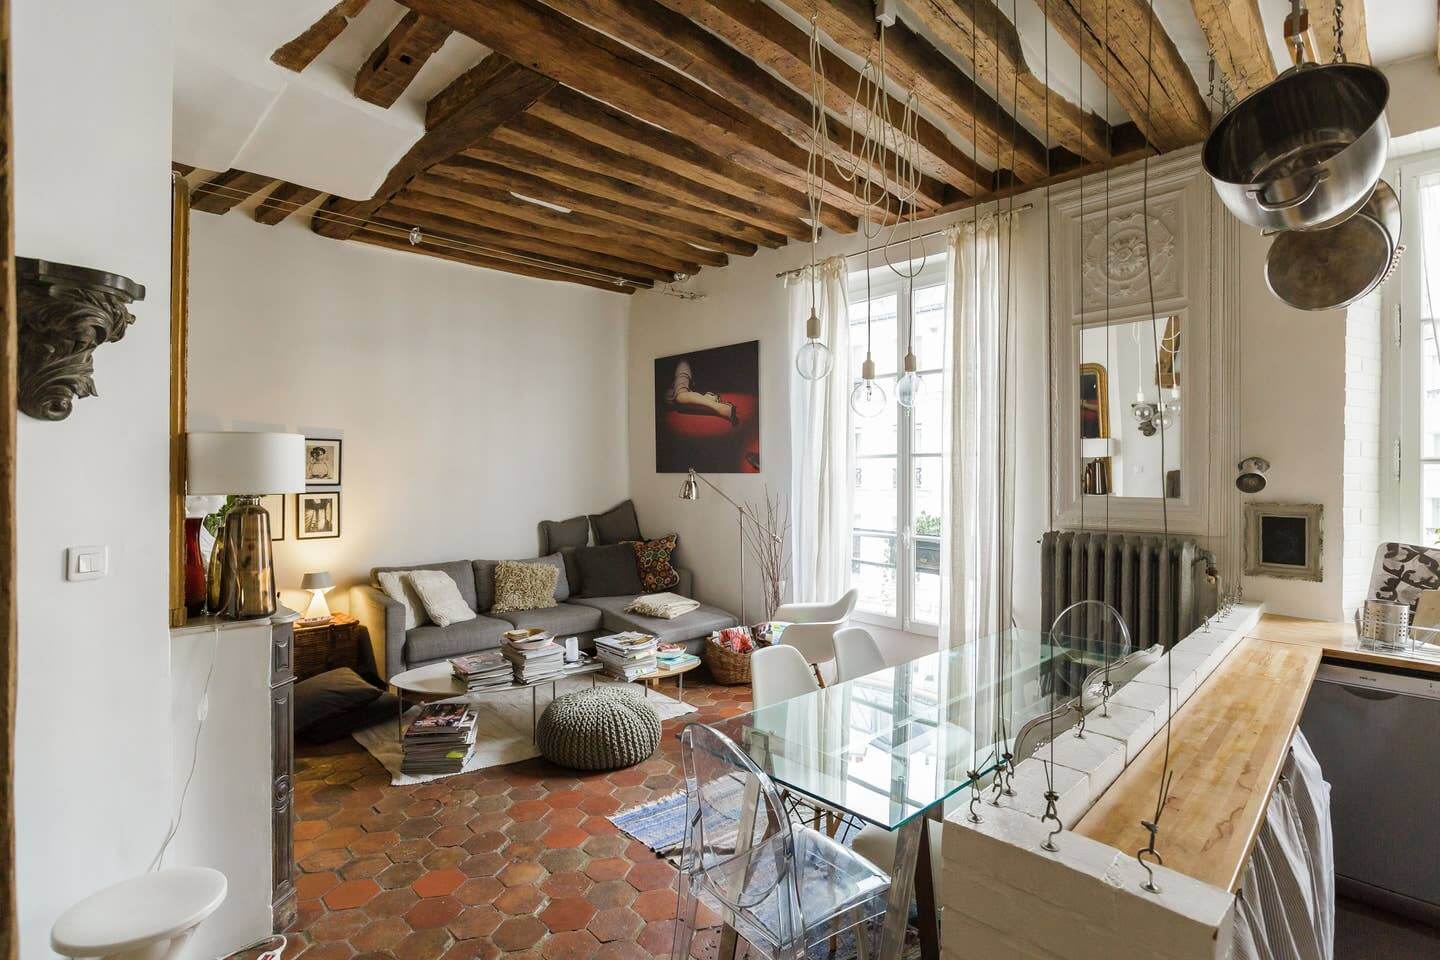 18th century paris airbnb apartment nordroom3 A Cozy Airbnb Apartment in an 18th-Century Building in Paris